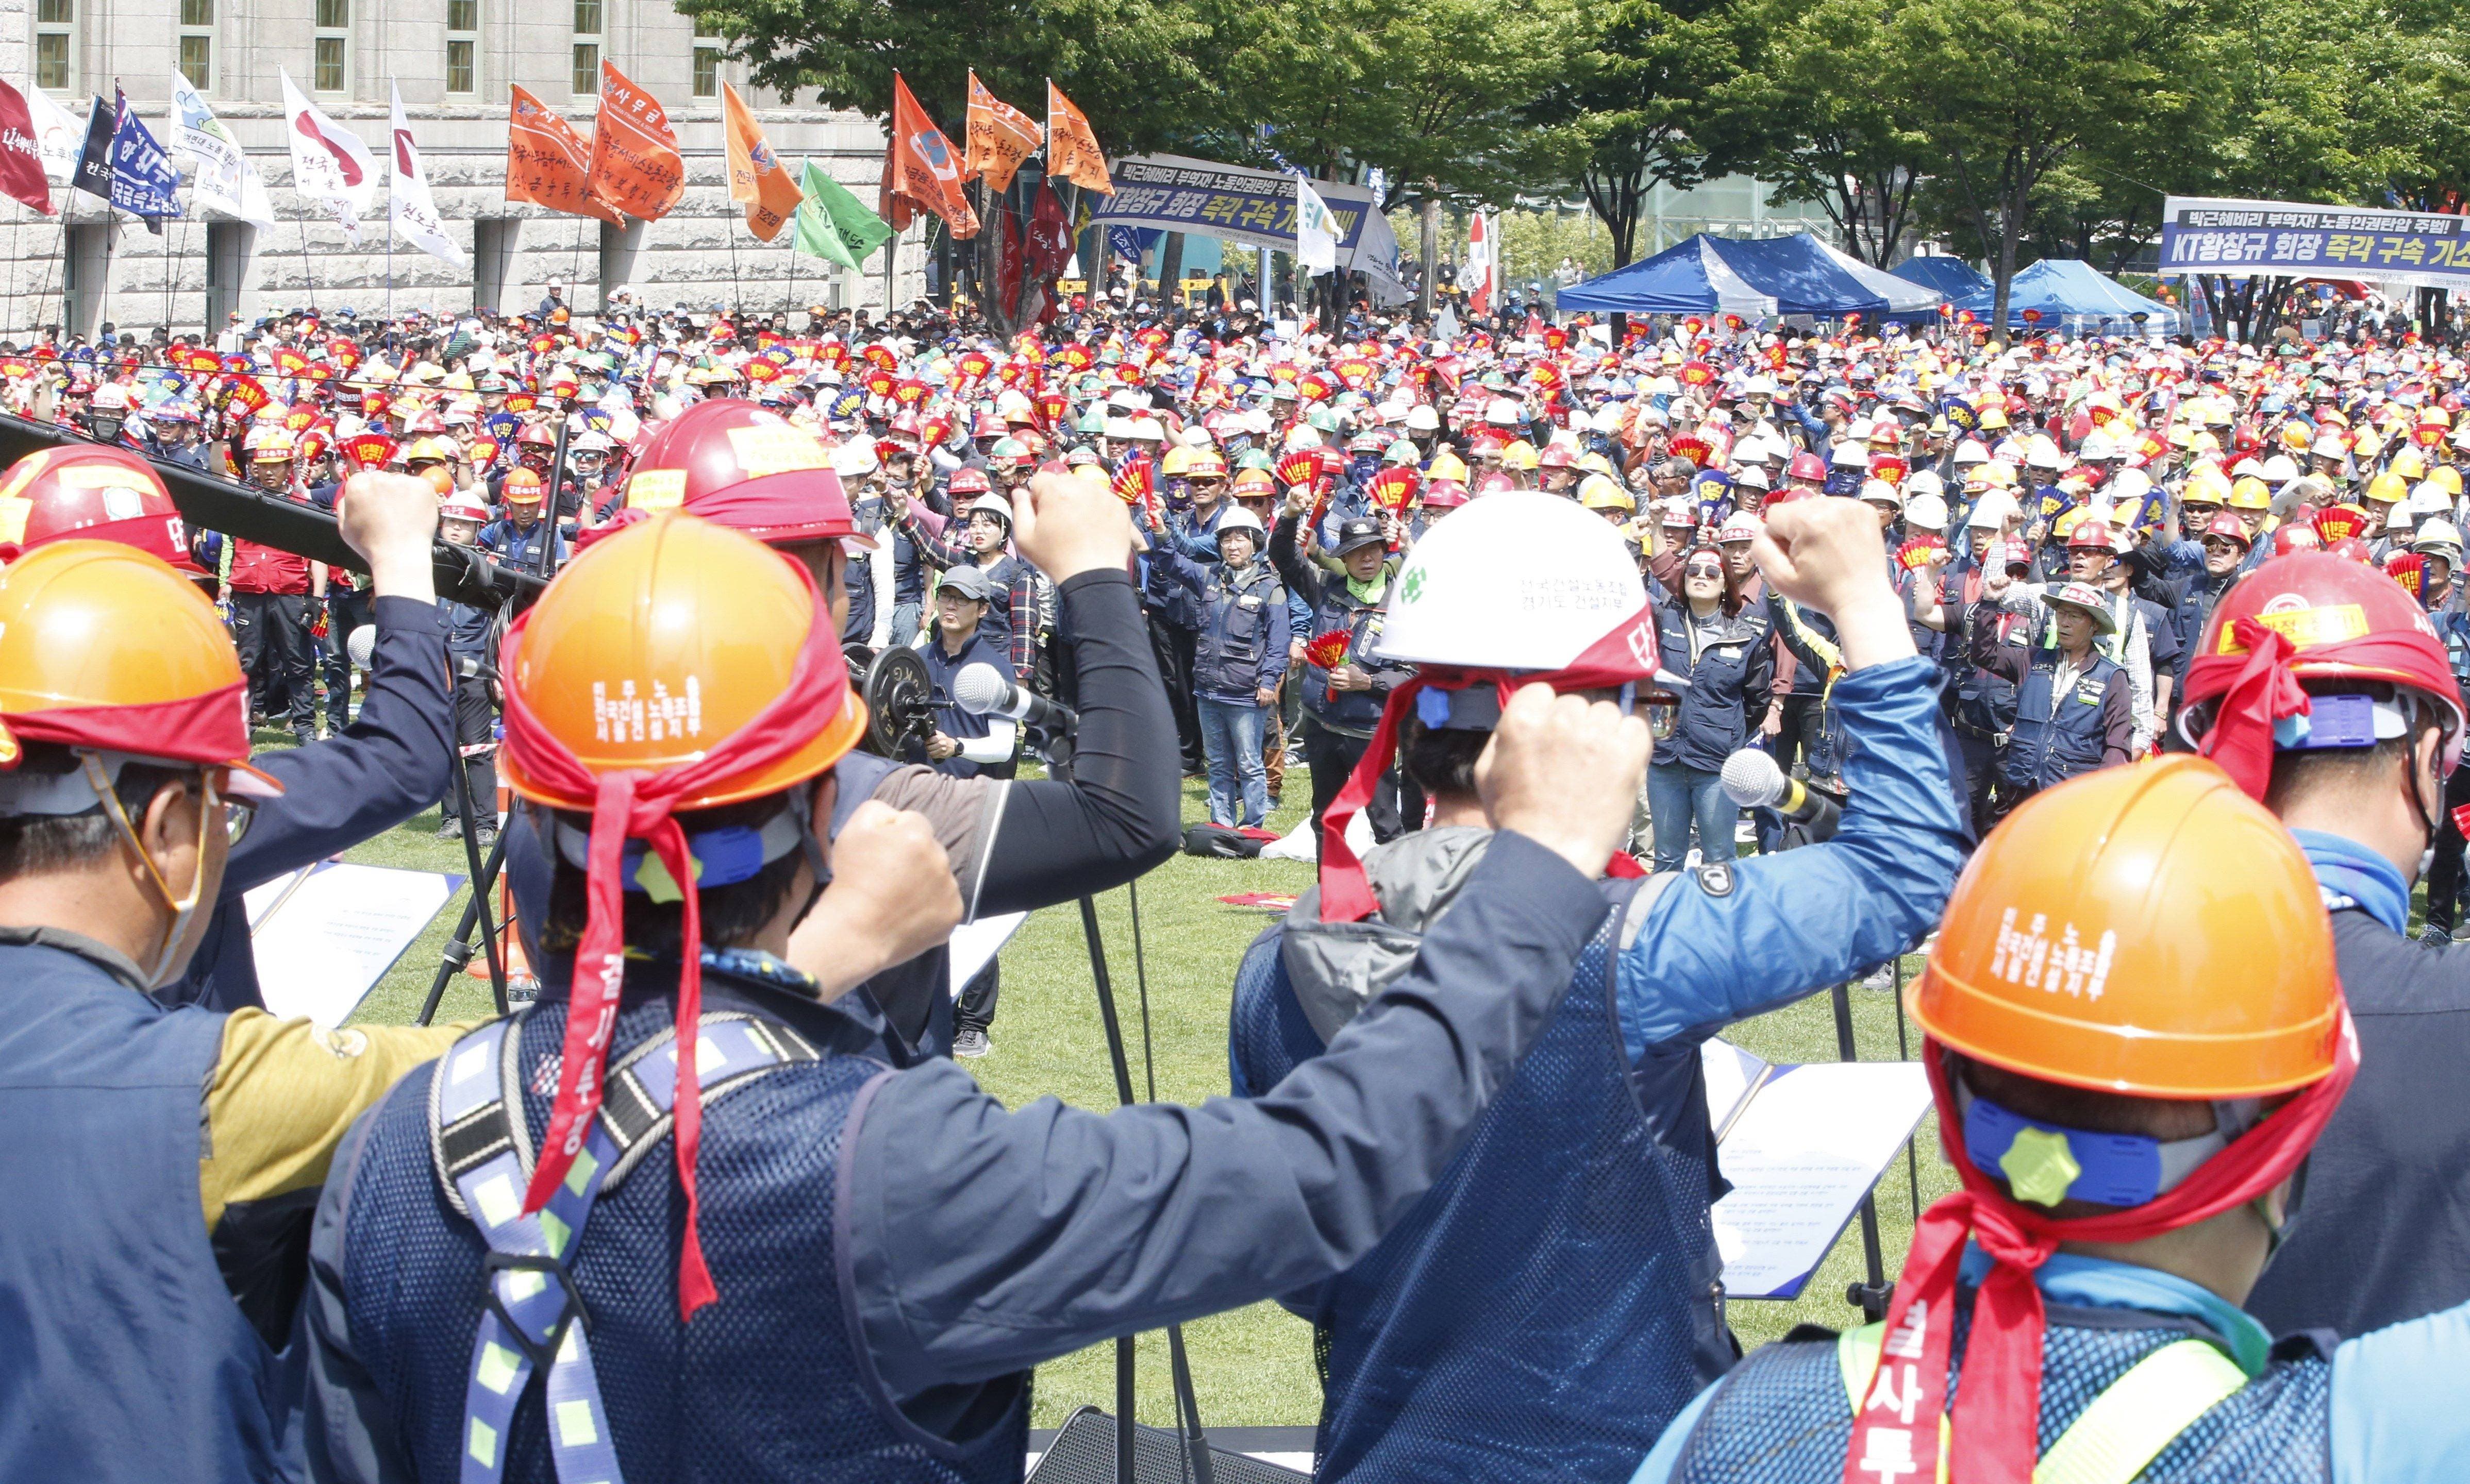 KHC01. SEÚL (COREA DEL SUR), 01/05/2019.- Miembros de la Confederación de Sindicatos de Corea del Sur (KCTU) participan en una marcha convocada con motivo del Día Internacional del Trabajo, este miércoles, en Séul (Corea del Sur). Cerca de 30.000 personas participaron en la protesta para pedir una reforma laboral que mejore las condiciones laborales. EFE/ Kim Hee-chul